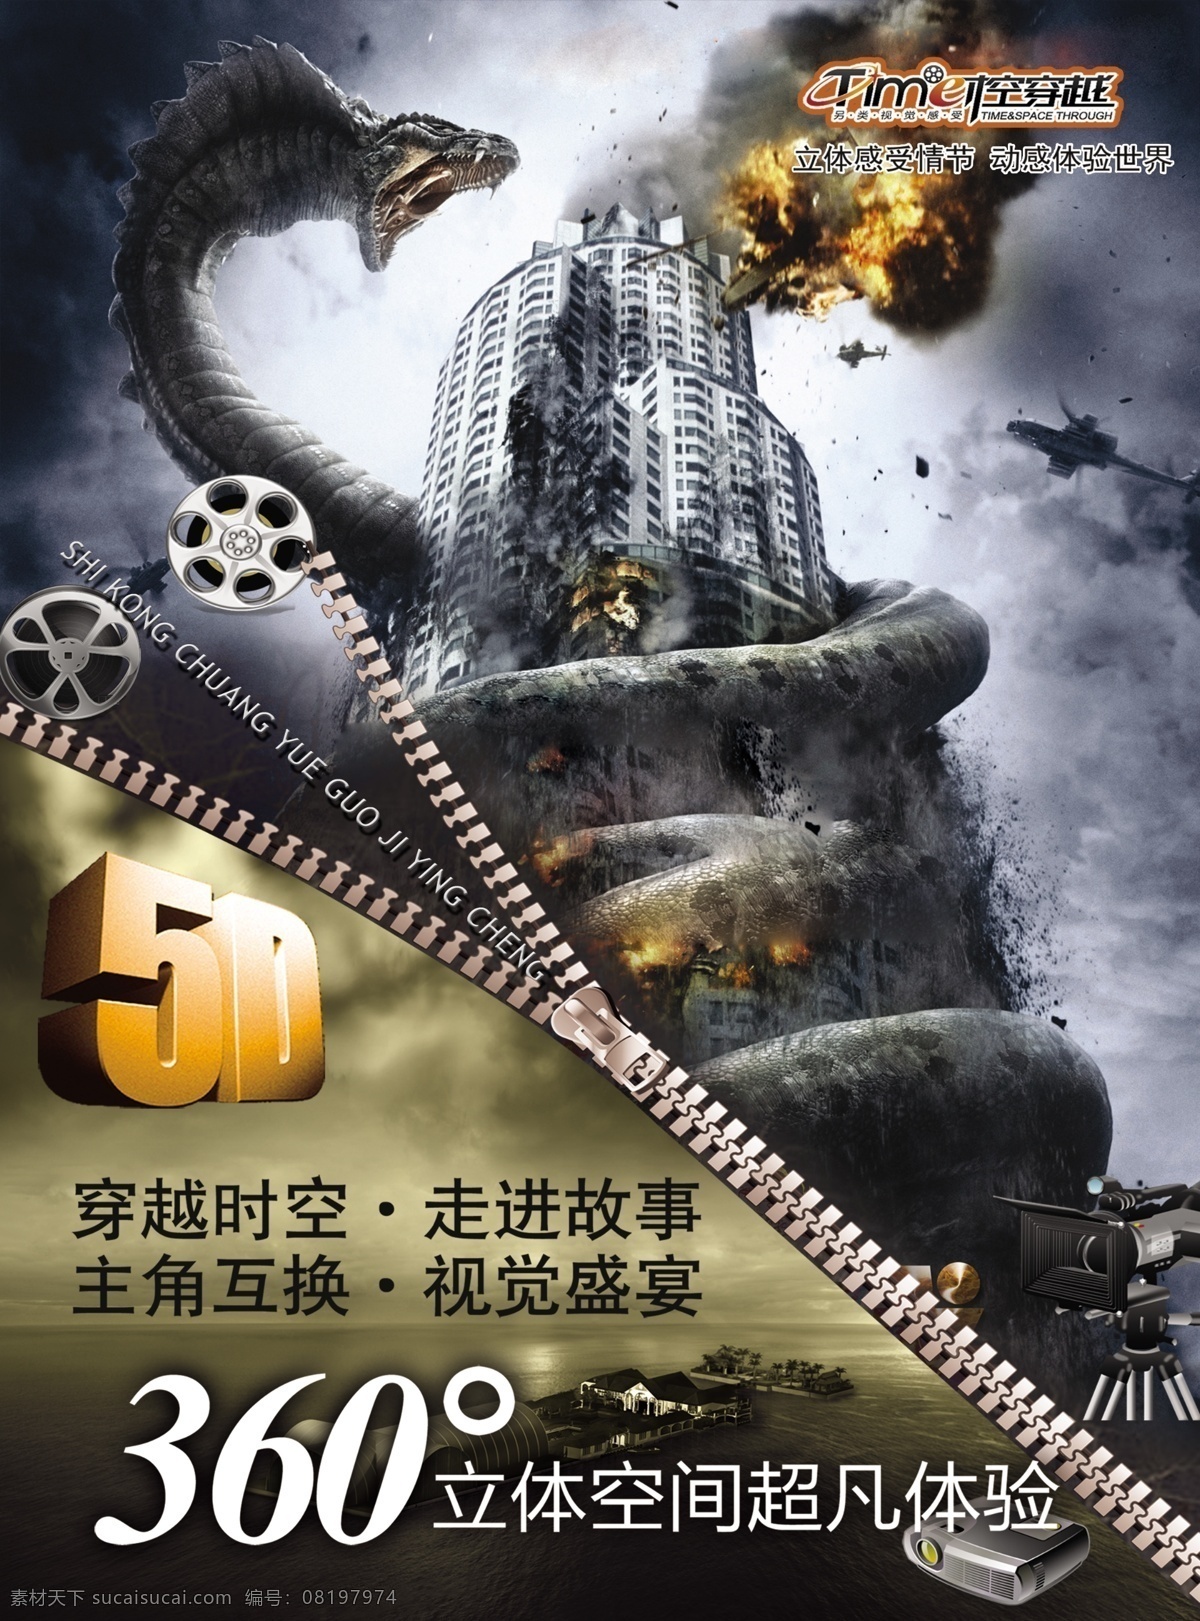 5d 电影 宣传单 5d电影 5d电影海报 电影宣传单 电影海报 彩页 分层